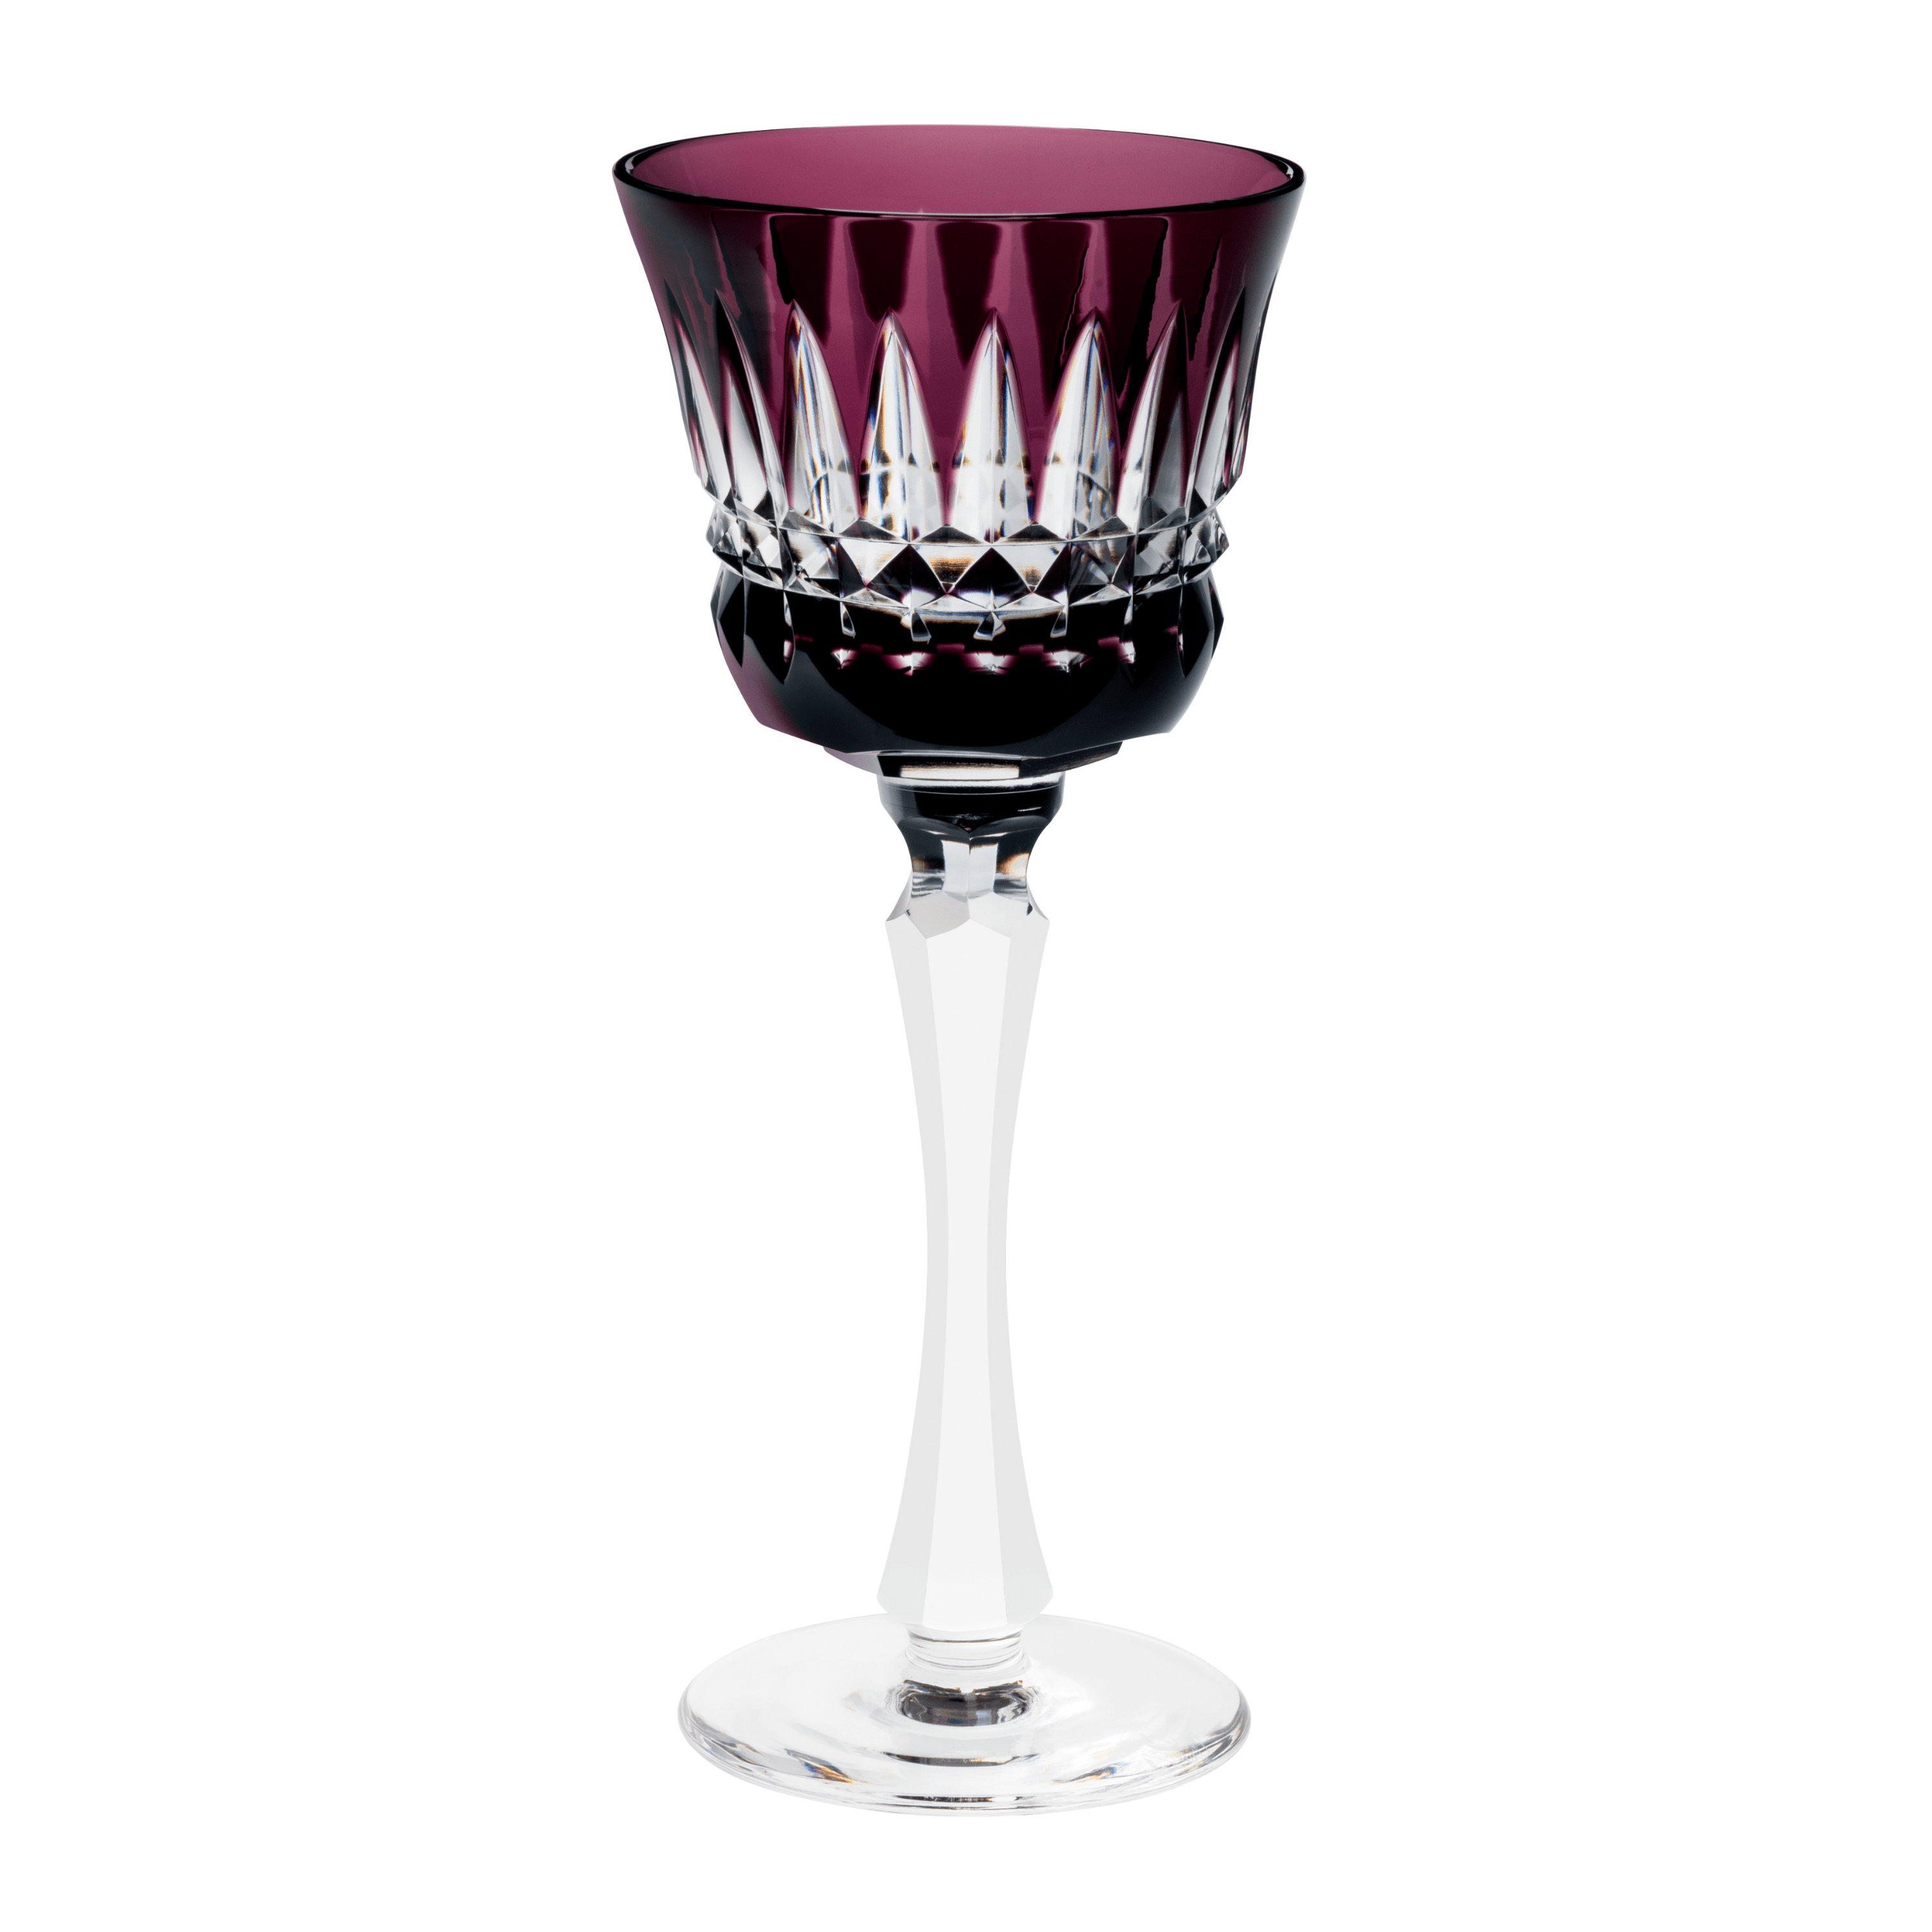 Mélodie - Red wine glass